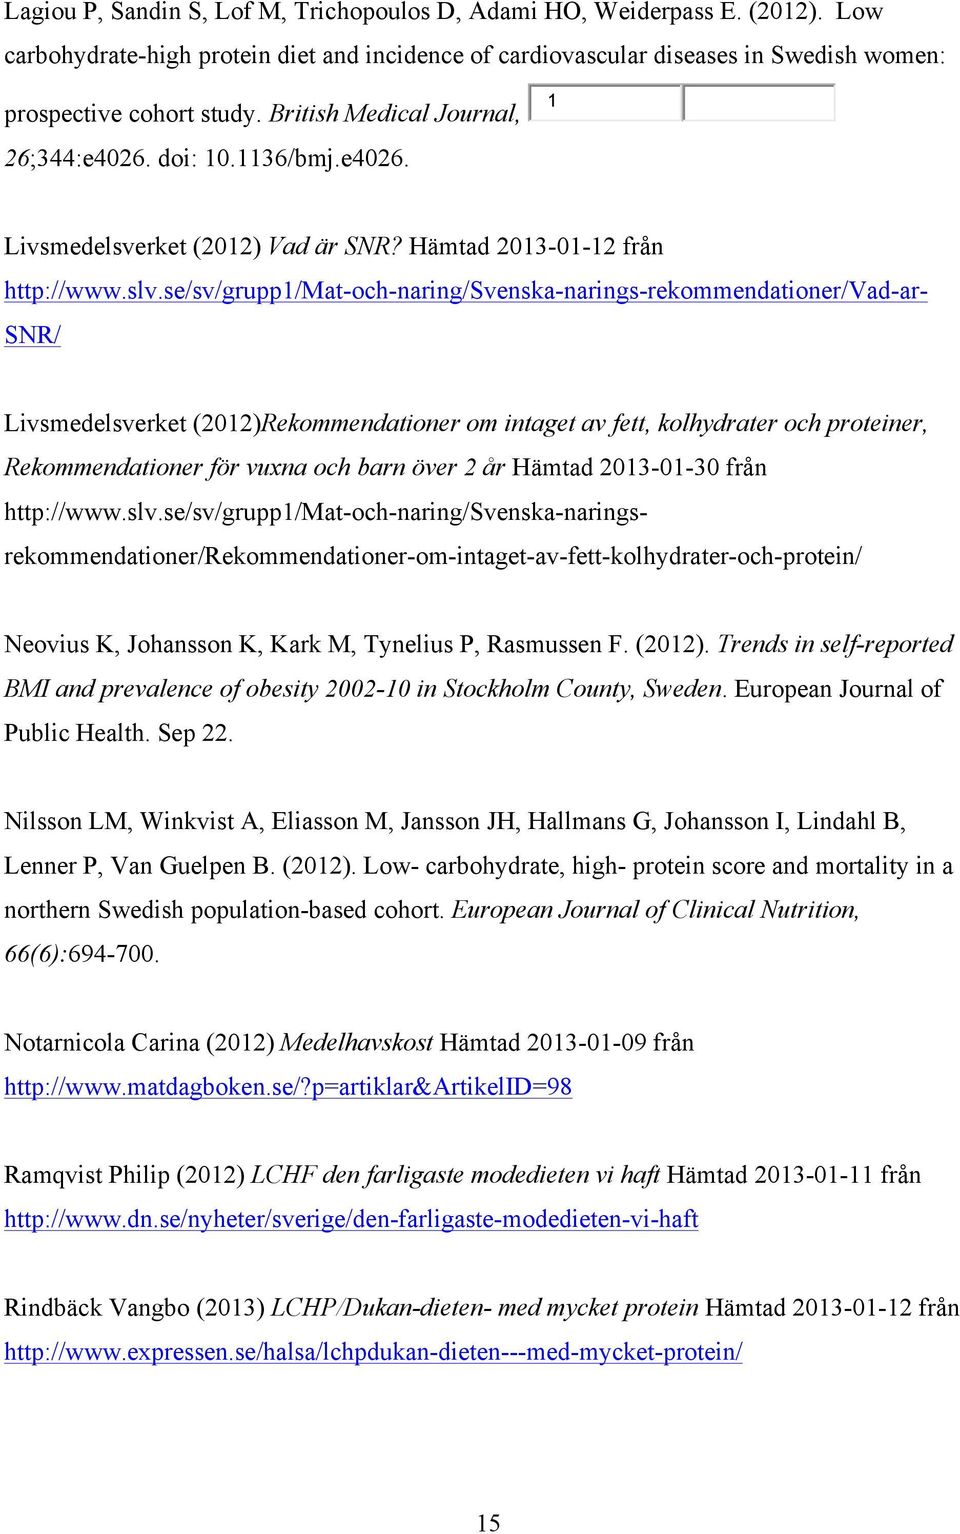 se/sv/grupp1/mat-och-naring/svenska-narings-rekommendationer/vad-ar- Livsmedelsverket (2012)Rekommendationer om intaget av fett, kolhydrater och proteiner, Rekommendationer för vuxna och barn över 2